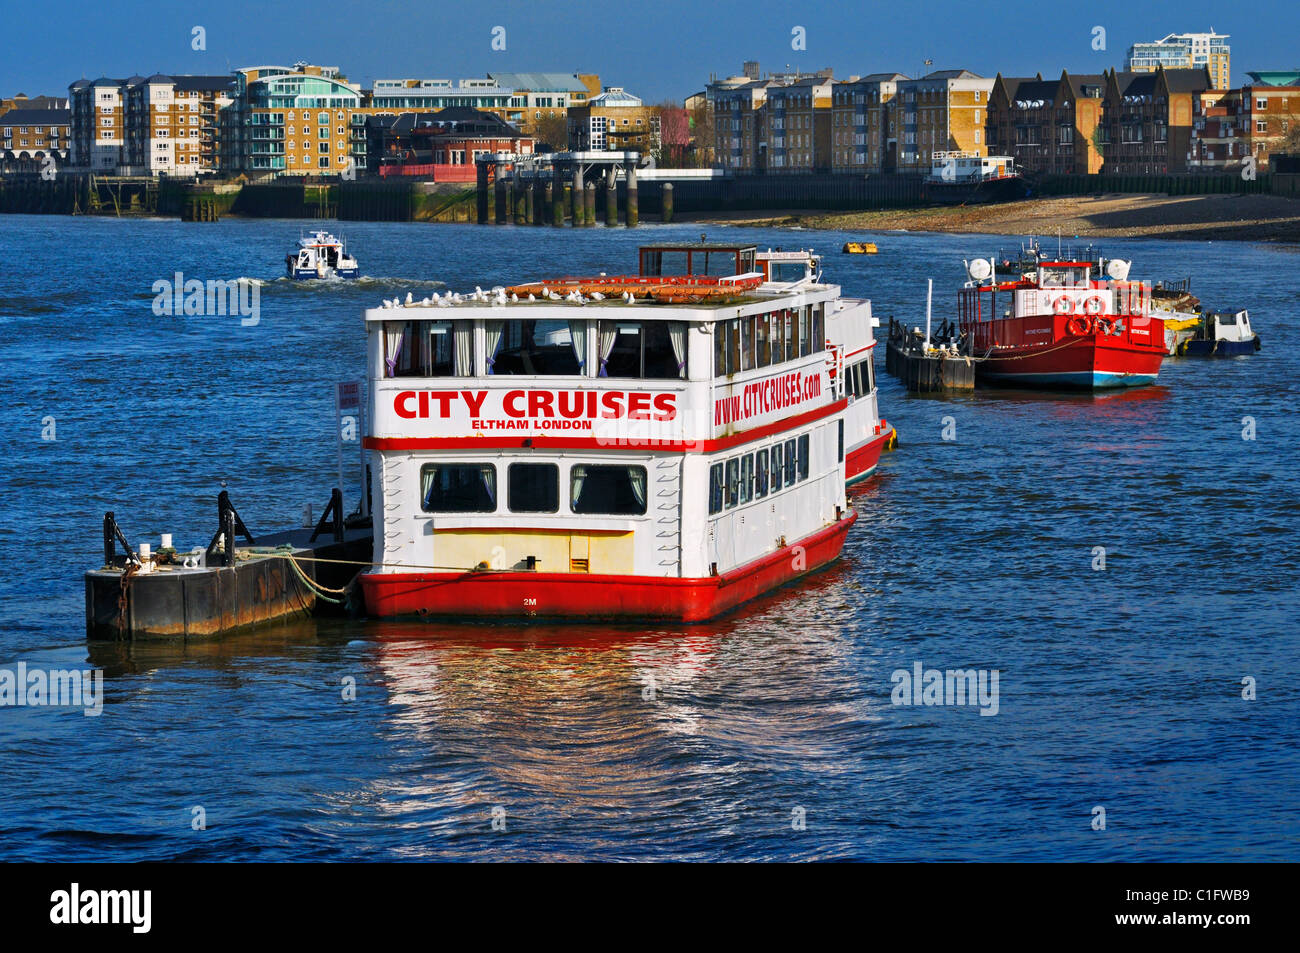 Crociera della Citta' riverboat M.T. Eltham ormeggiato sul fiume Tamigi con appartamenti moderni lungo le rive, London, Regno Unito Foto Stock